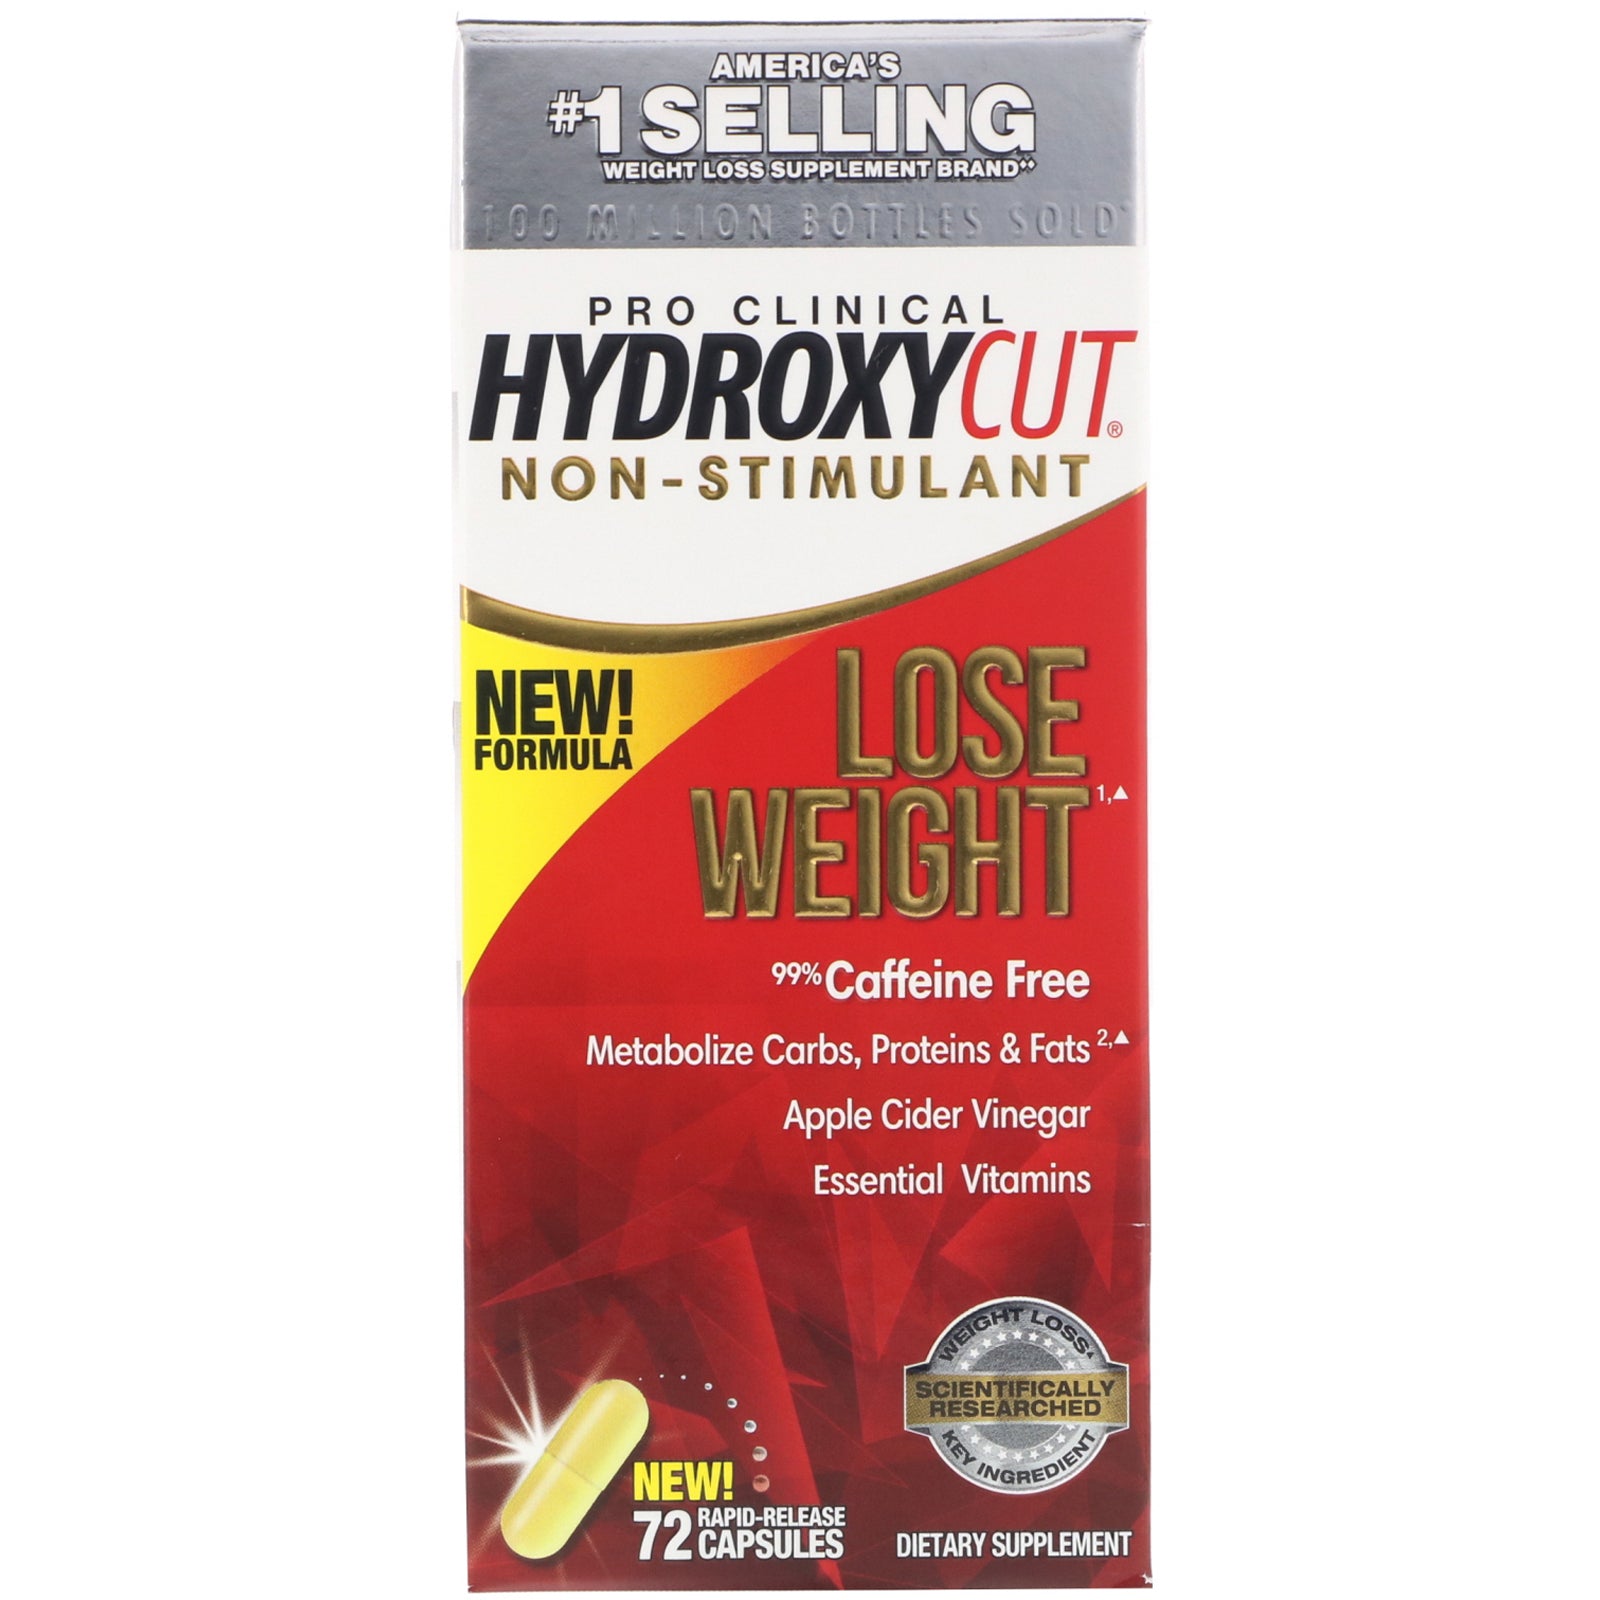 Hydroxycut, Pro Clinical Hydroxycut, Non-Stimulant